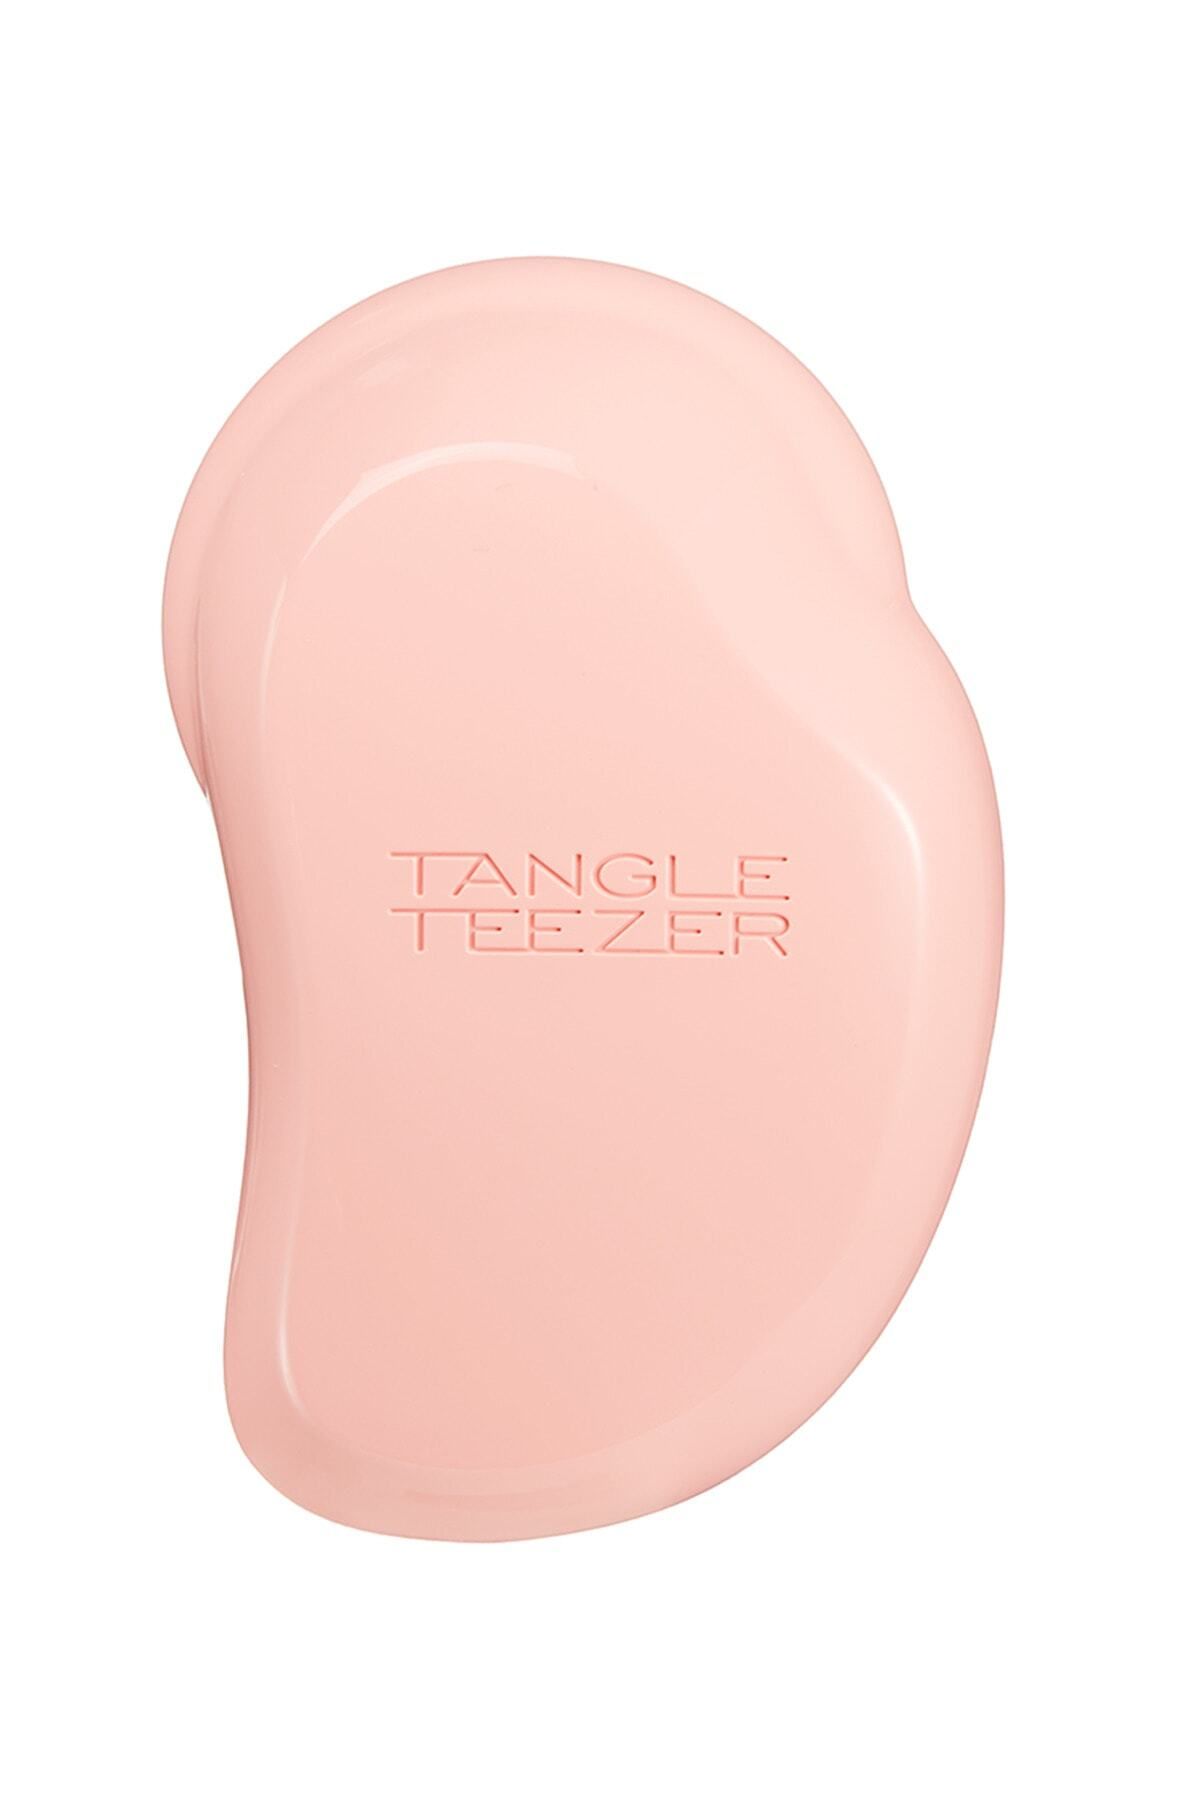 Tangle Teezer The Original Coral Lila Saç Fırçası